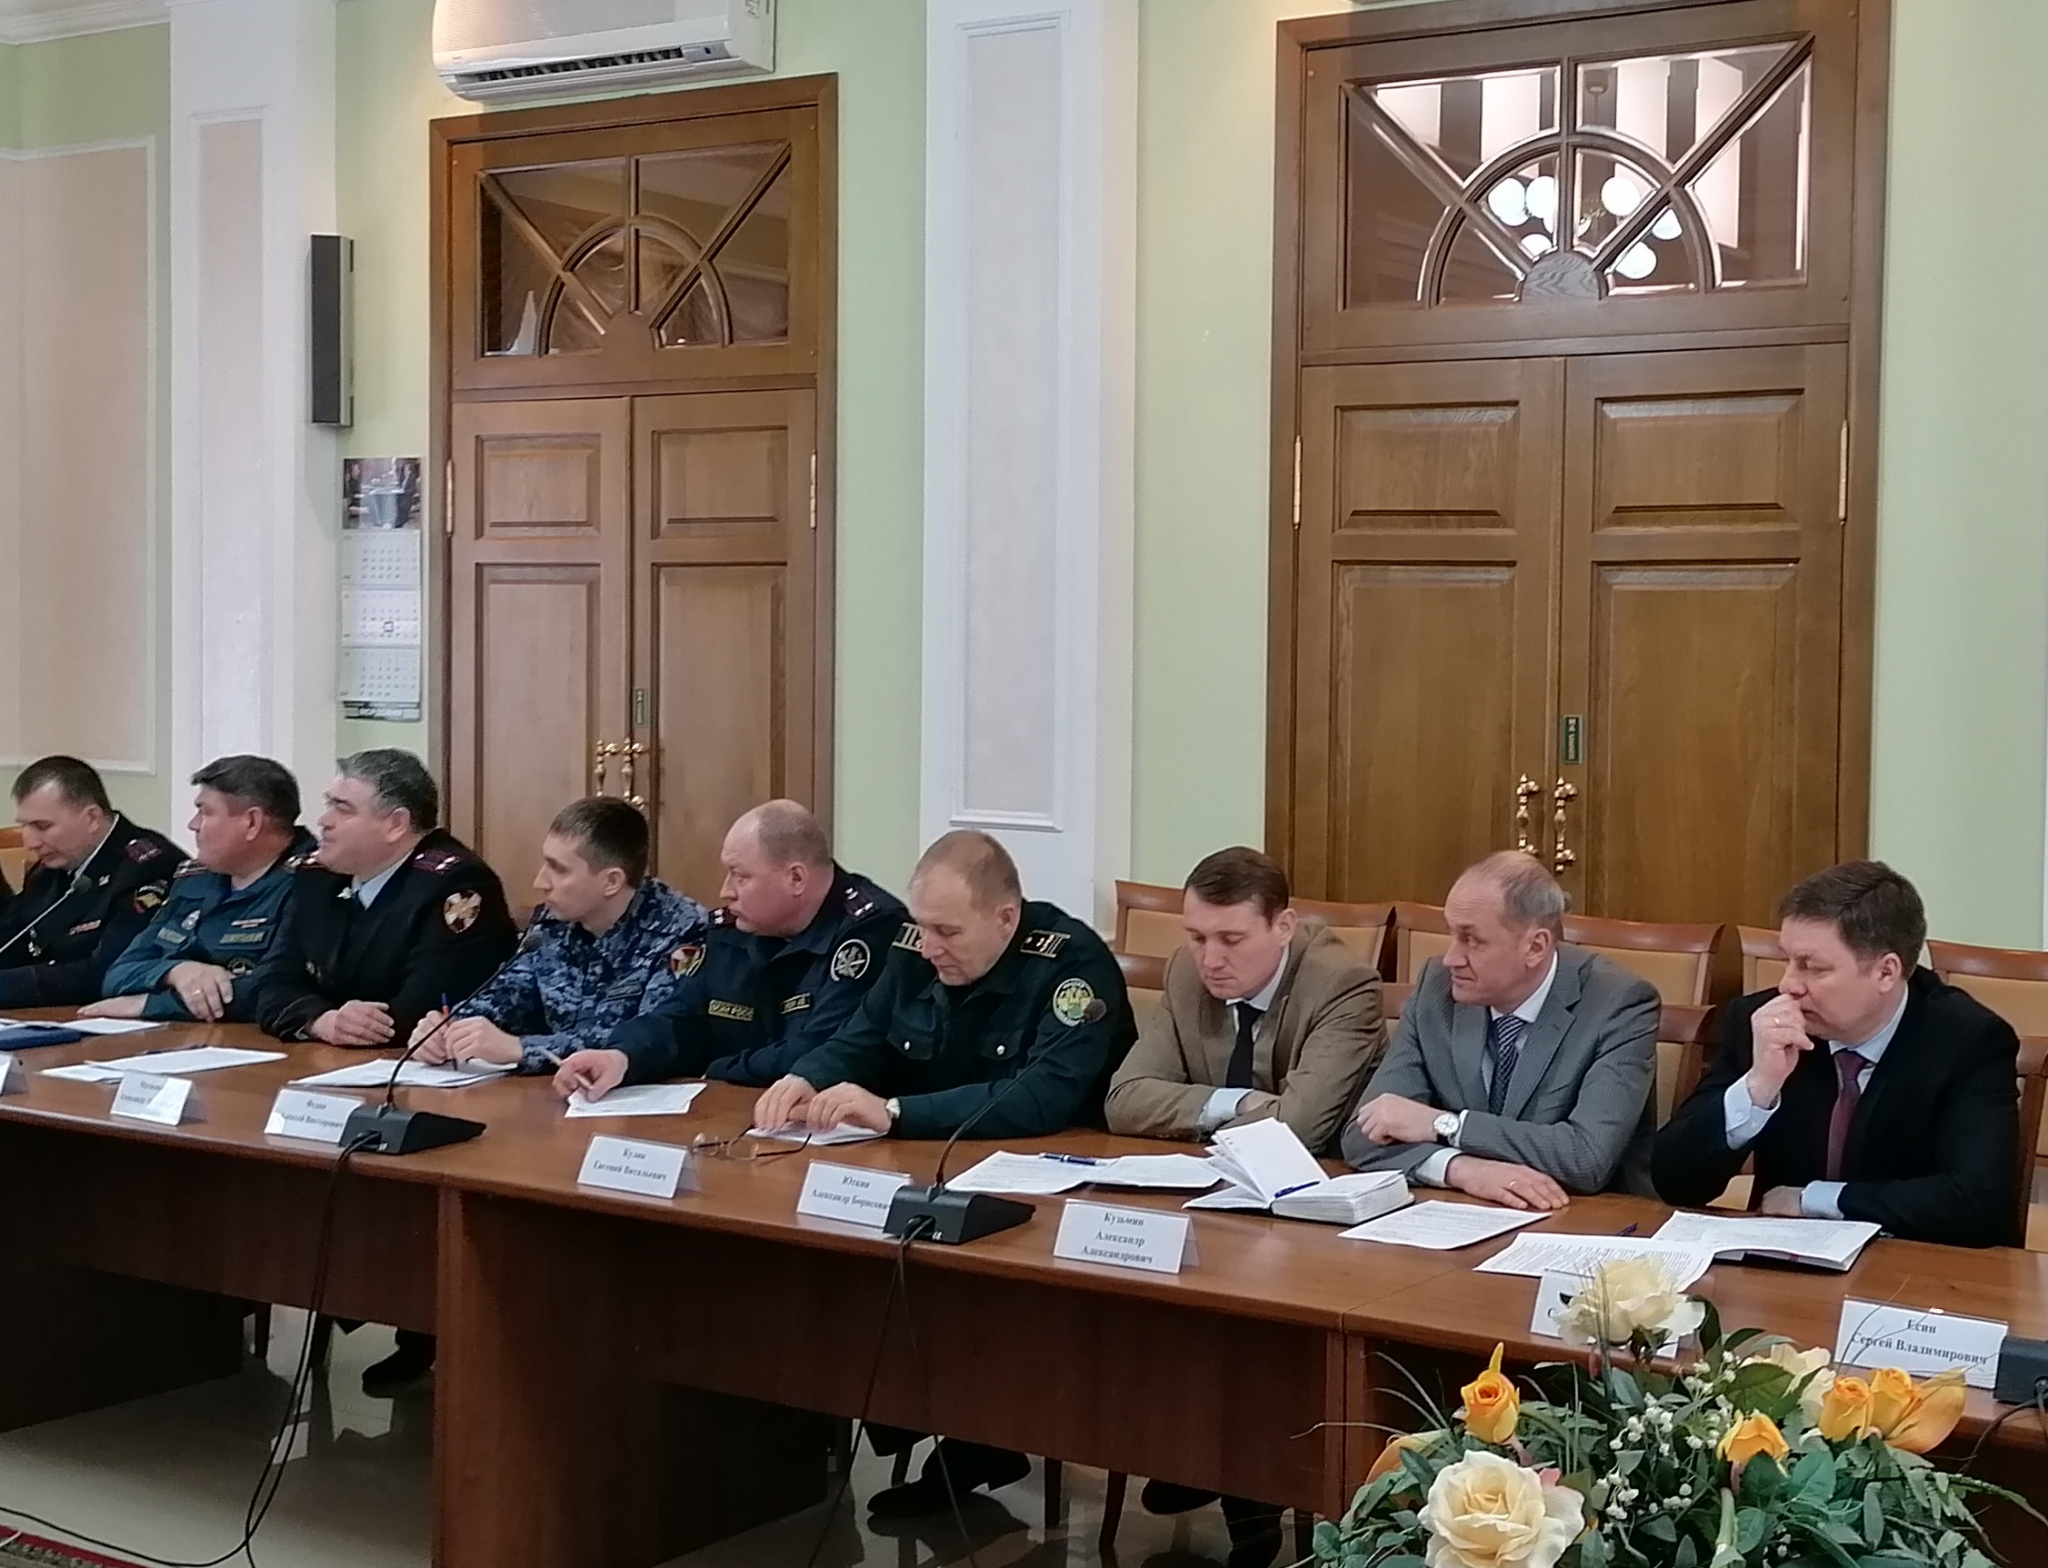 В Саранске обсудили антитеррористическую защиту объектов образования